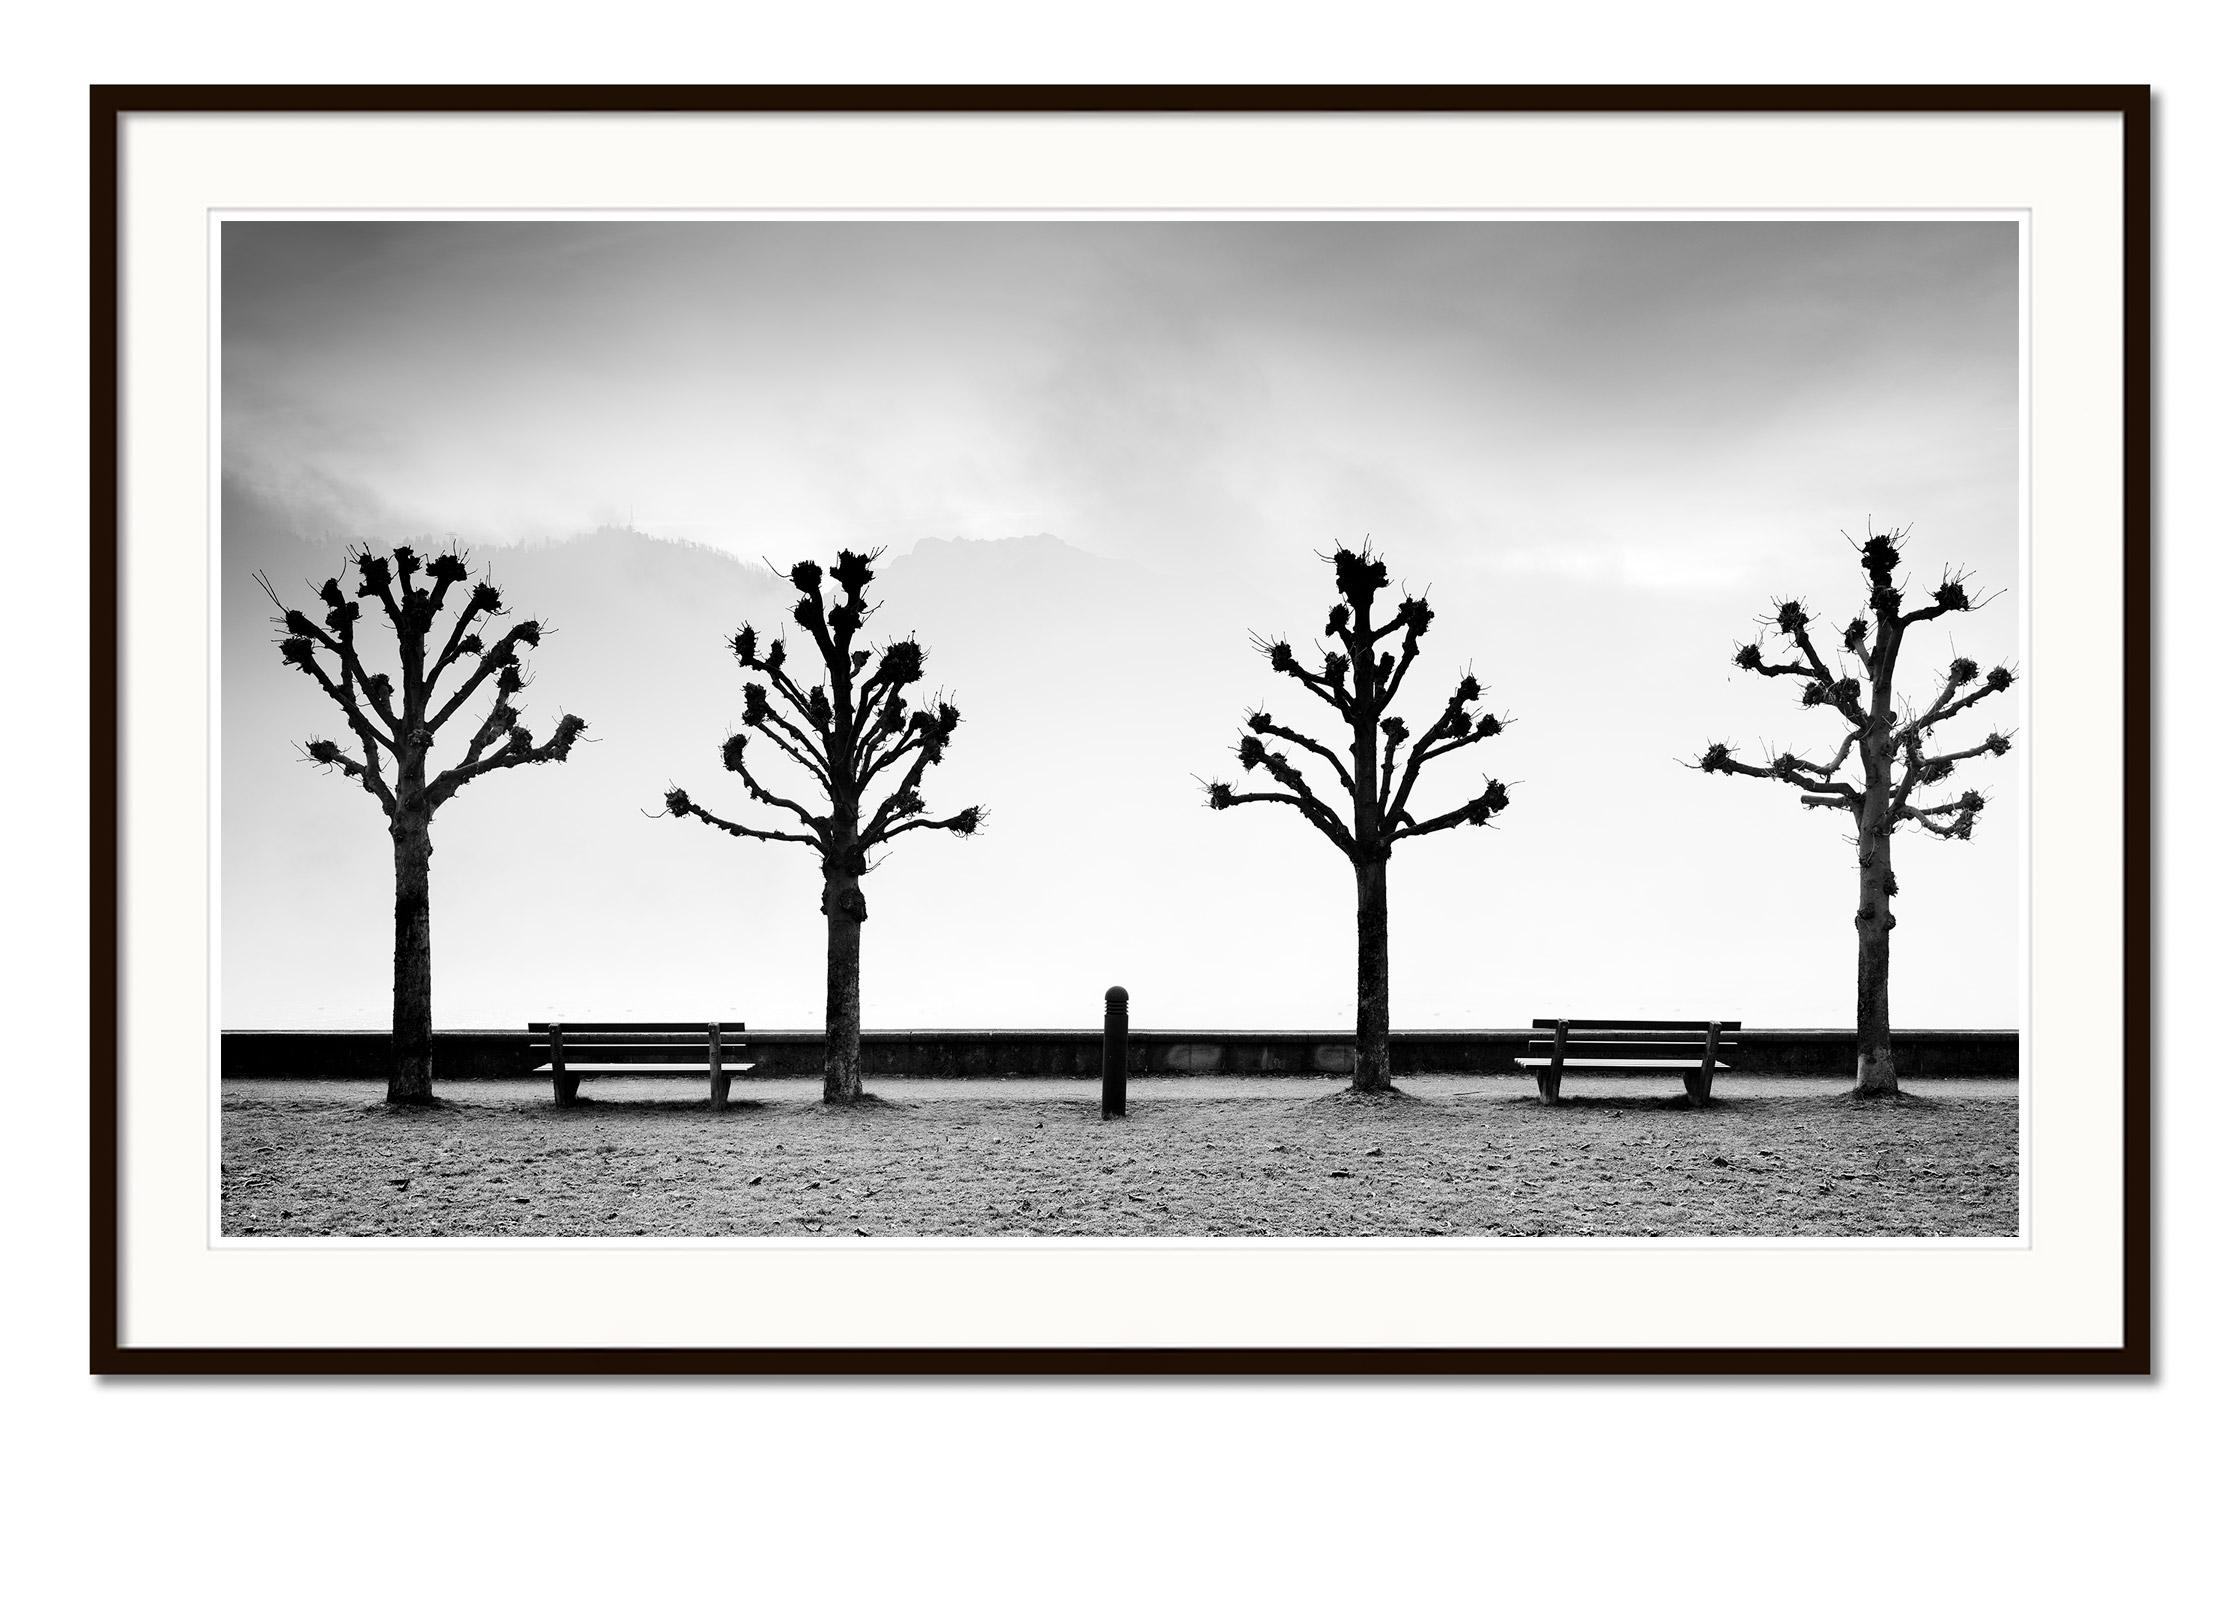 Esplanade mit Kastanienbäumen, Schwarz-Weiß-Fotografie der bildenden Kunst, Minimalismus und Schwarz-Weiß-Fotografie (Grau), Black and White Photograph, von Gerald Berghammer